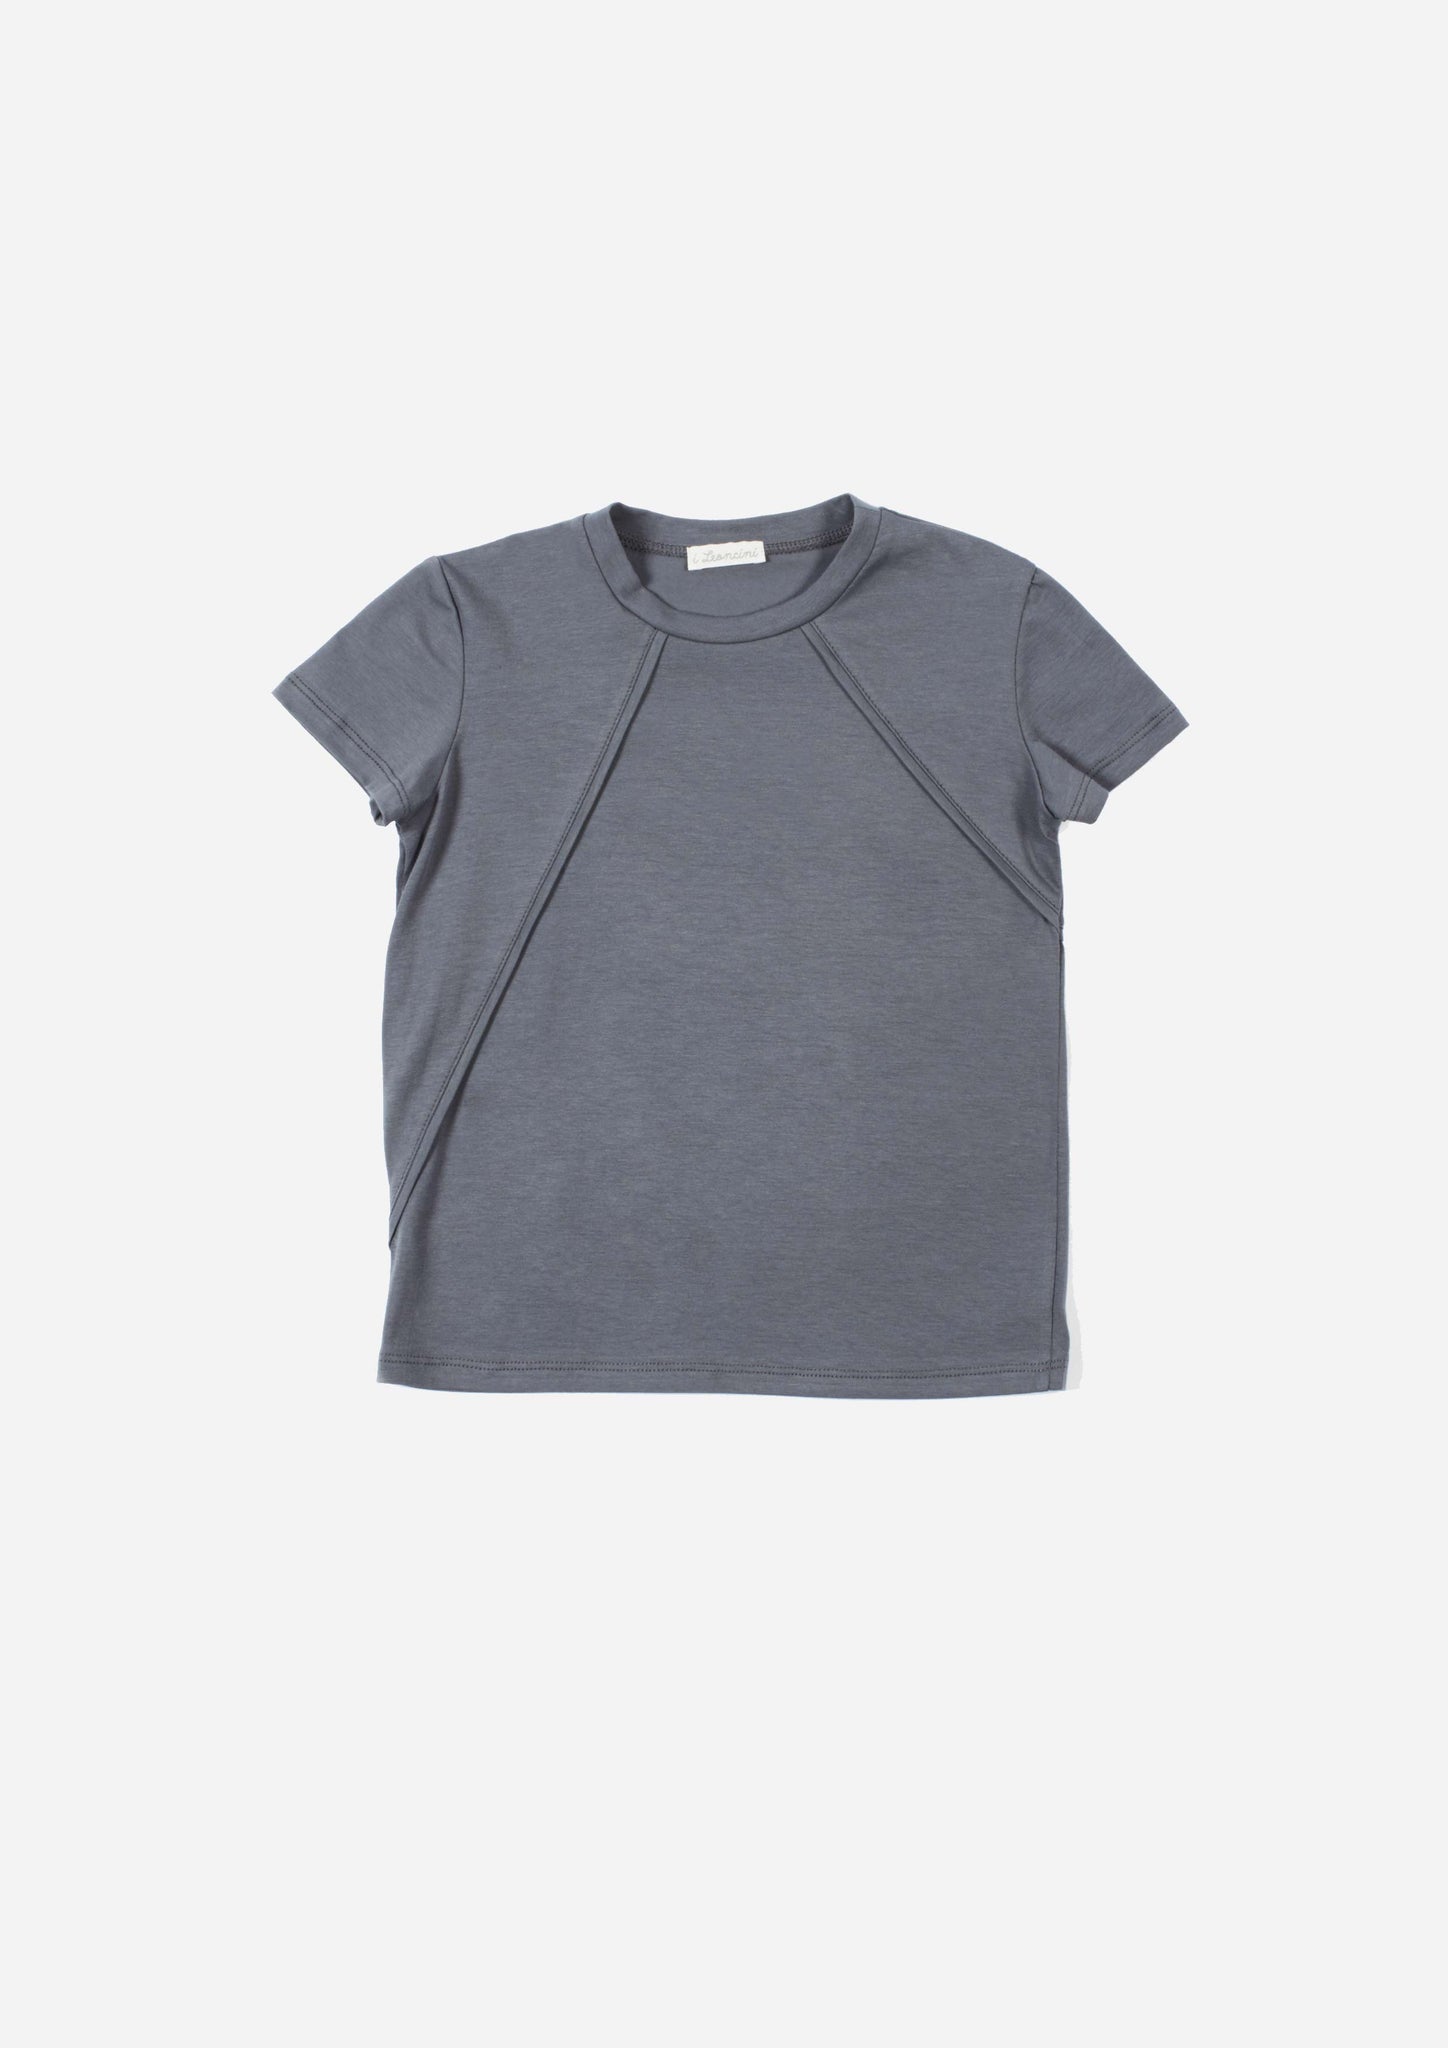 T-shirt GION-OUTLET T-shirt, Camicie, Top e Canotte-I Leoncini Shop